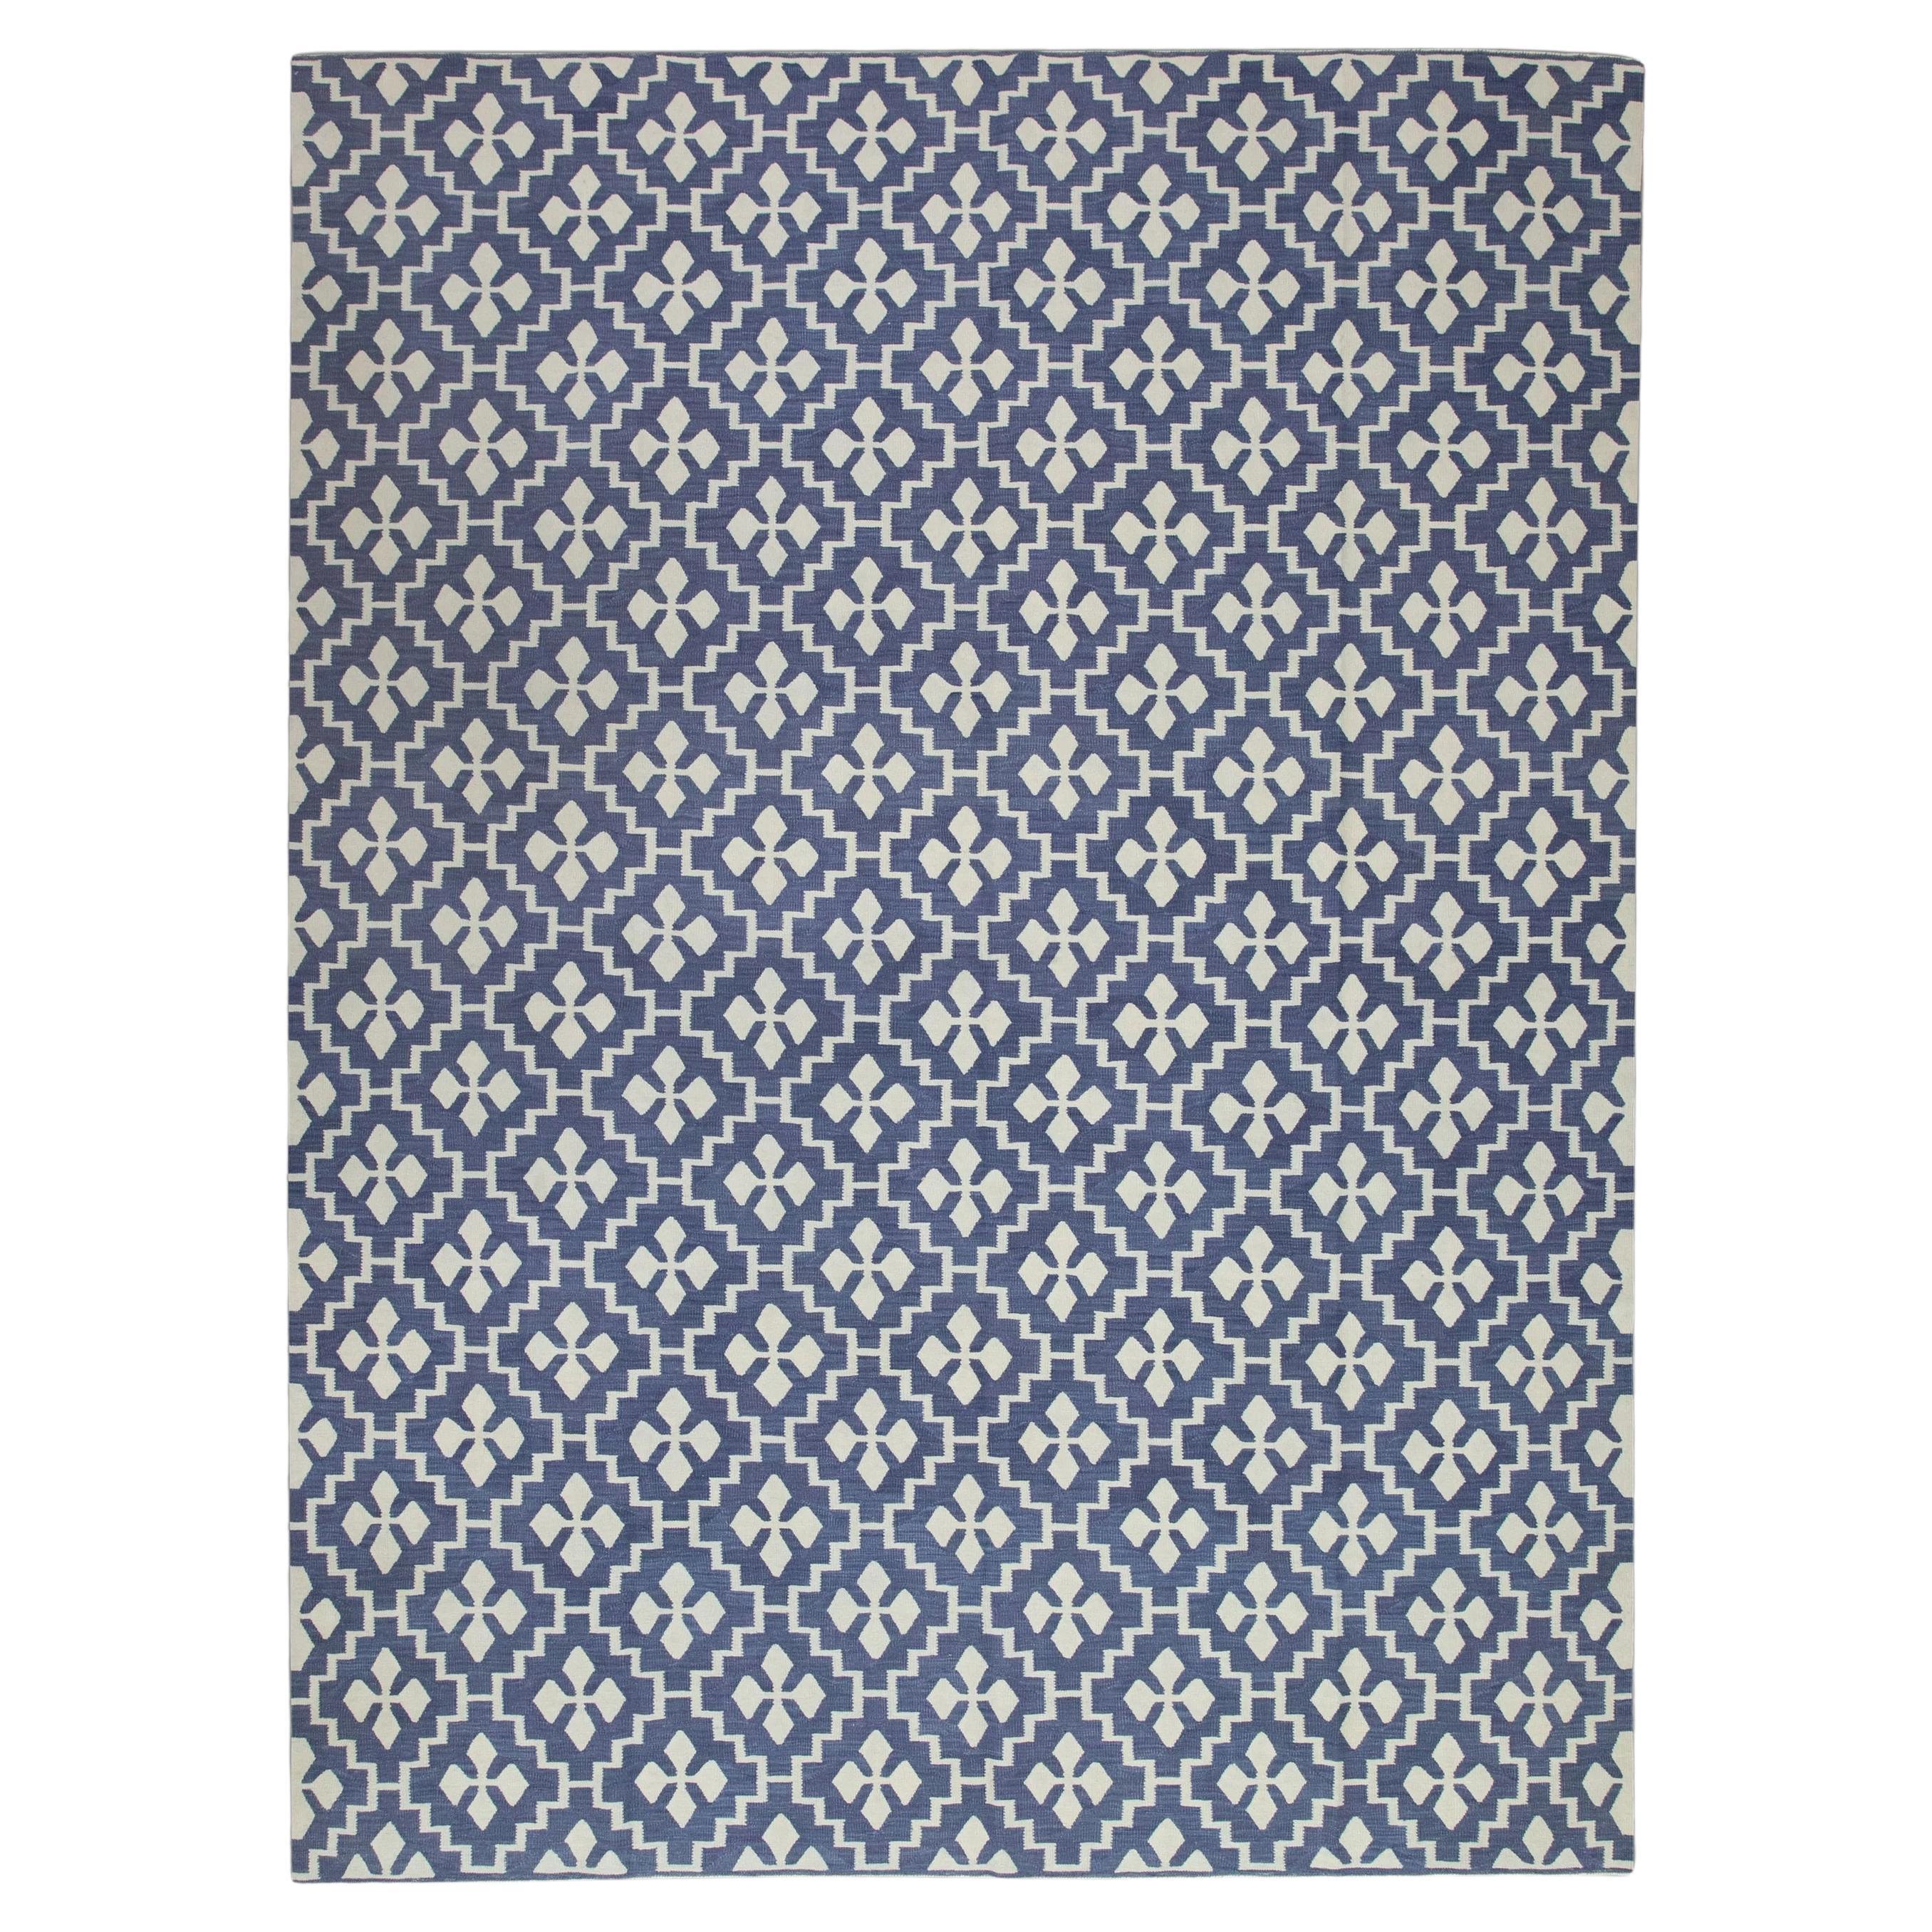 Blauer handgefertigter Flachgewebe-Wollteppich in geometrischem Design 9'2" X 12'2"